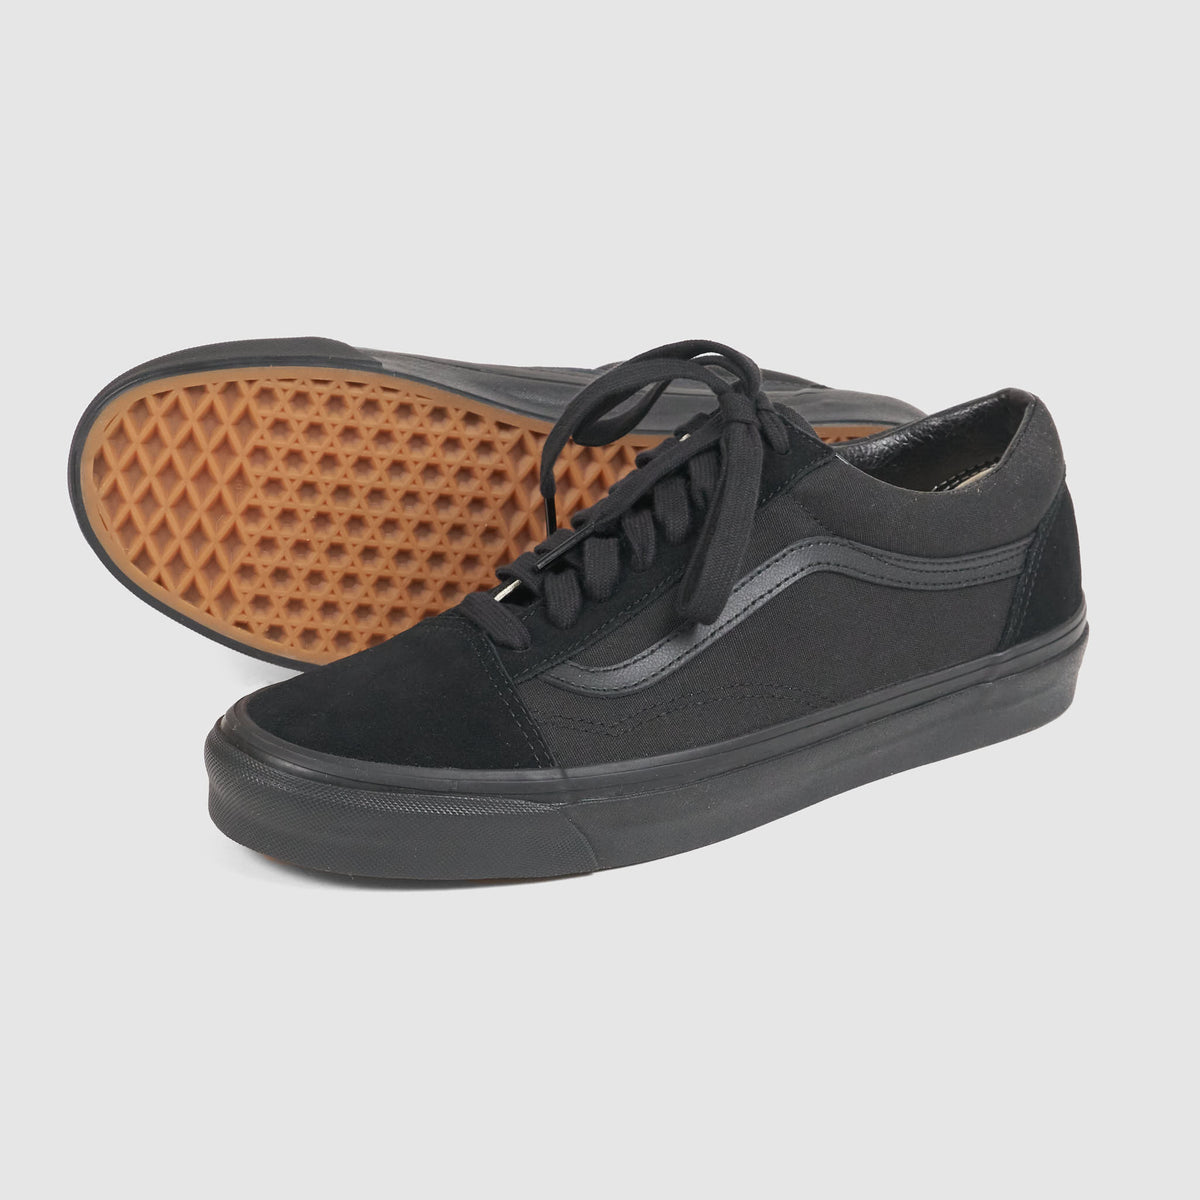 Vans Old Skool Leather Toe Cap 36 DX Sneaker